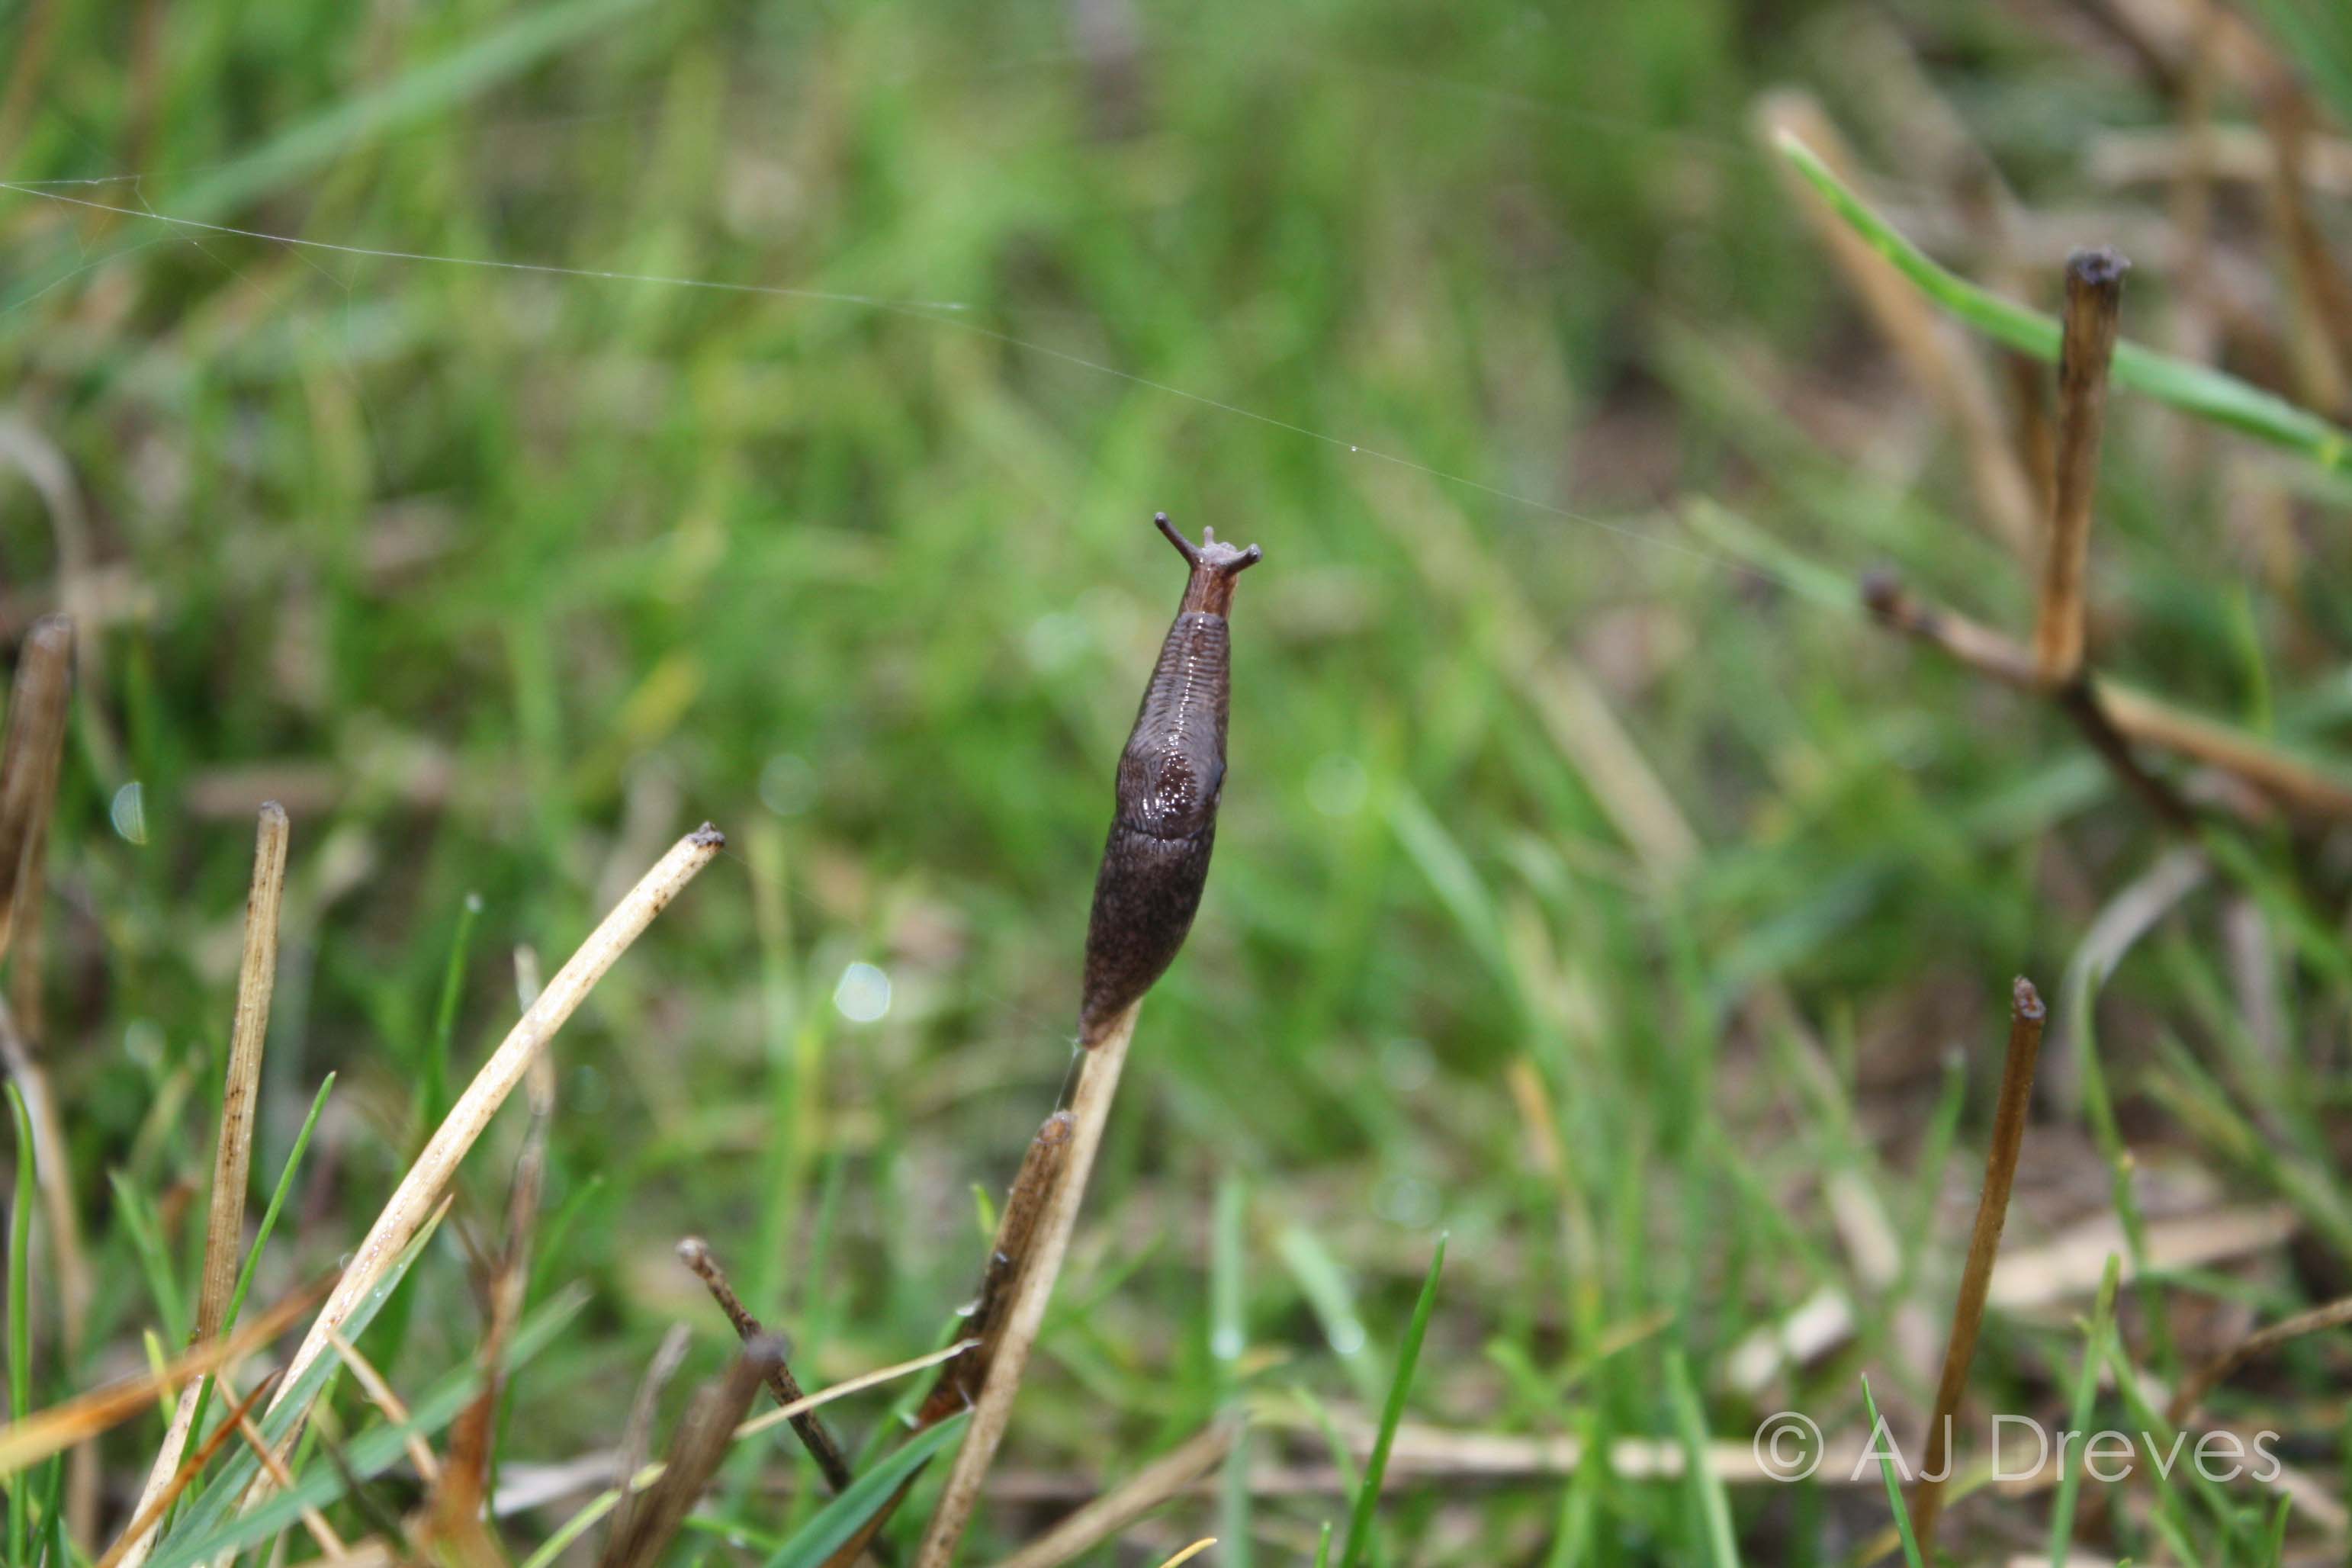 Slug in a field